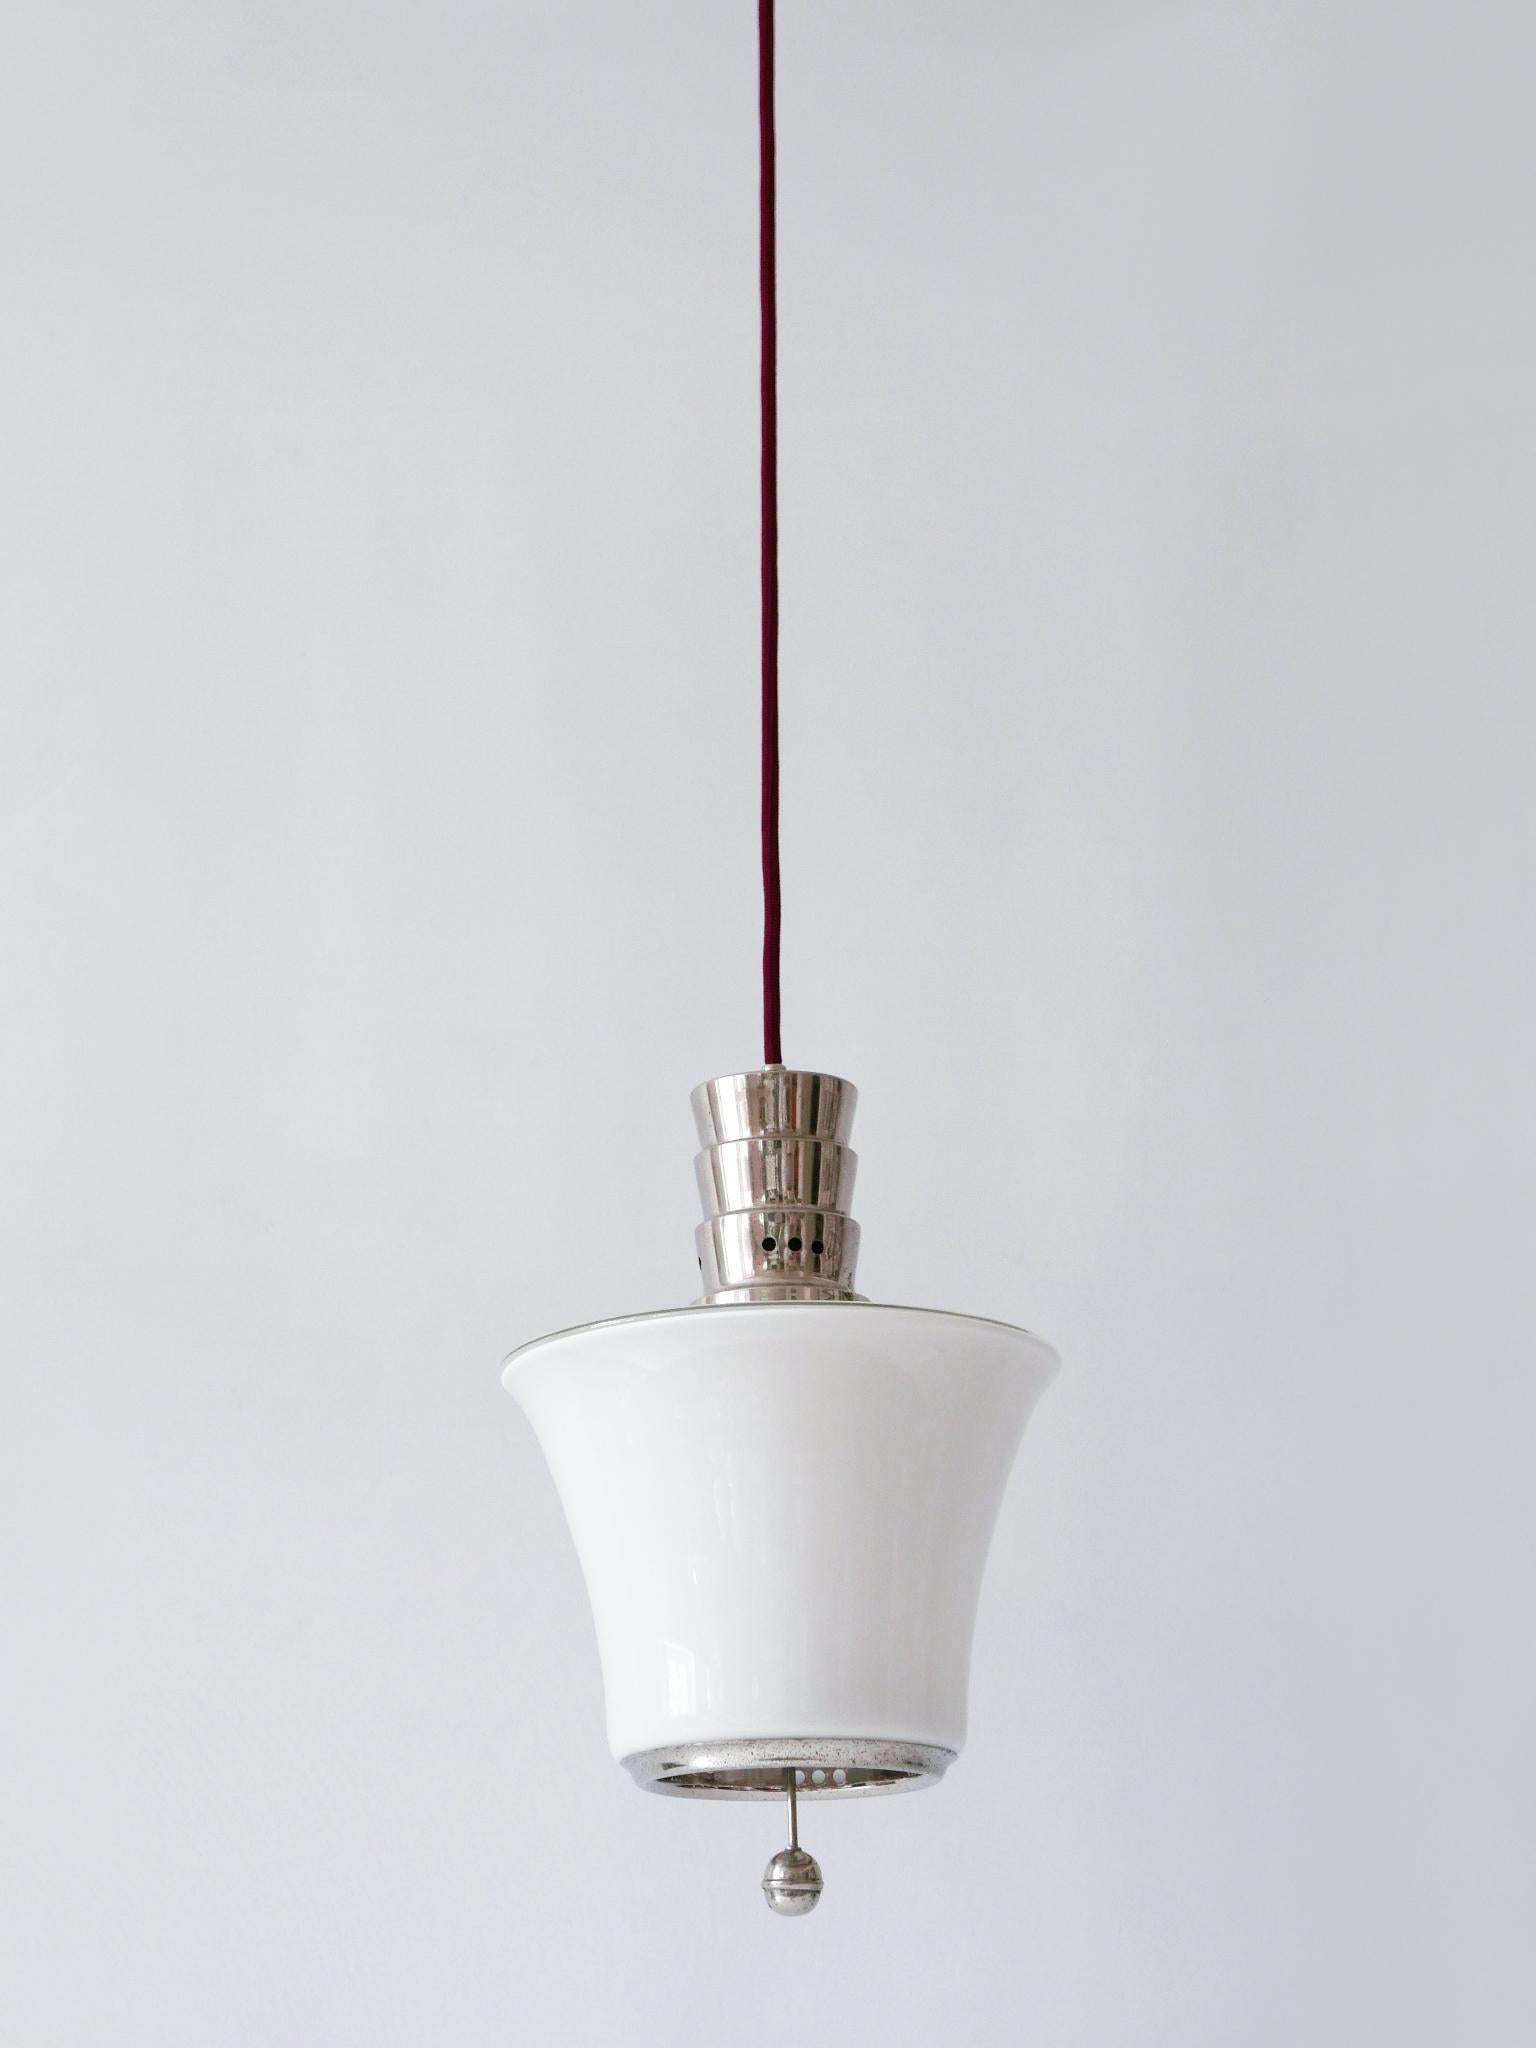 Exceptional Dr. Twerdy Original Bauhaus Art Deco Pendant Lamp, 1920s, Germany For Sale 1